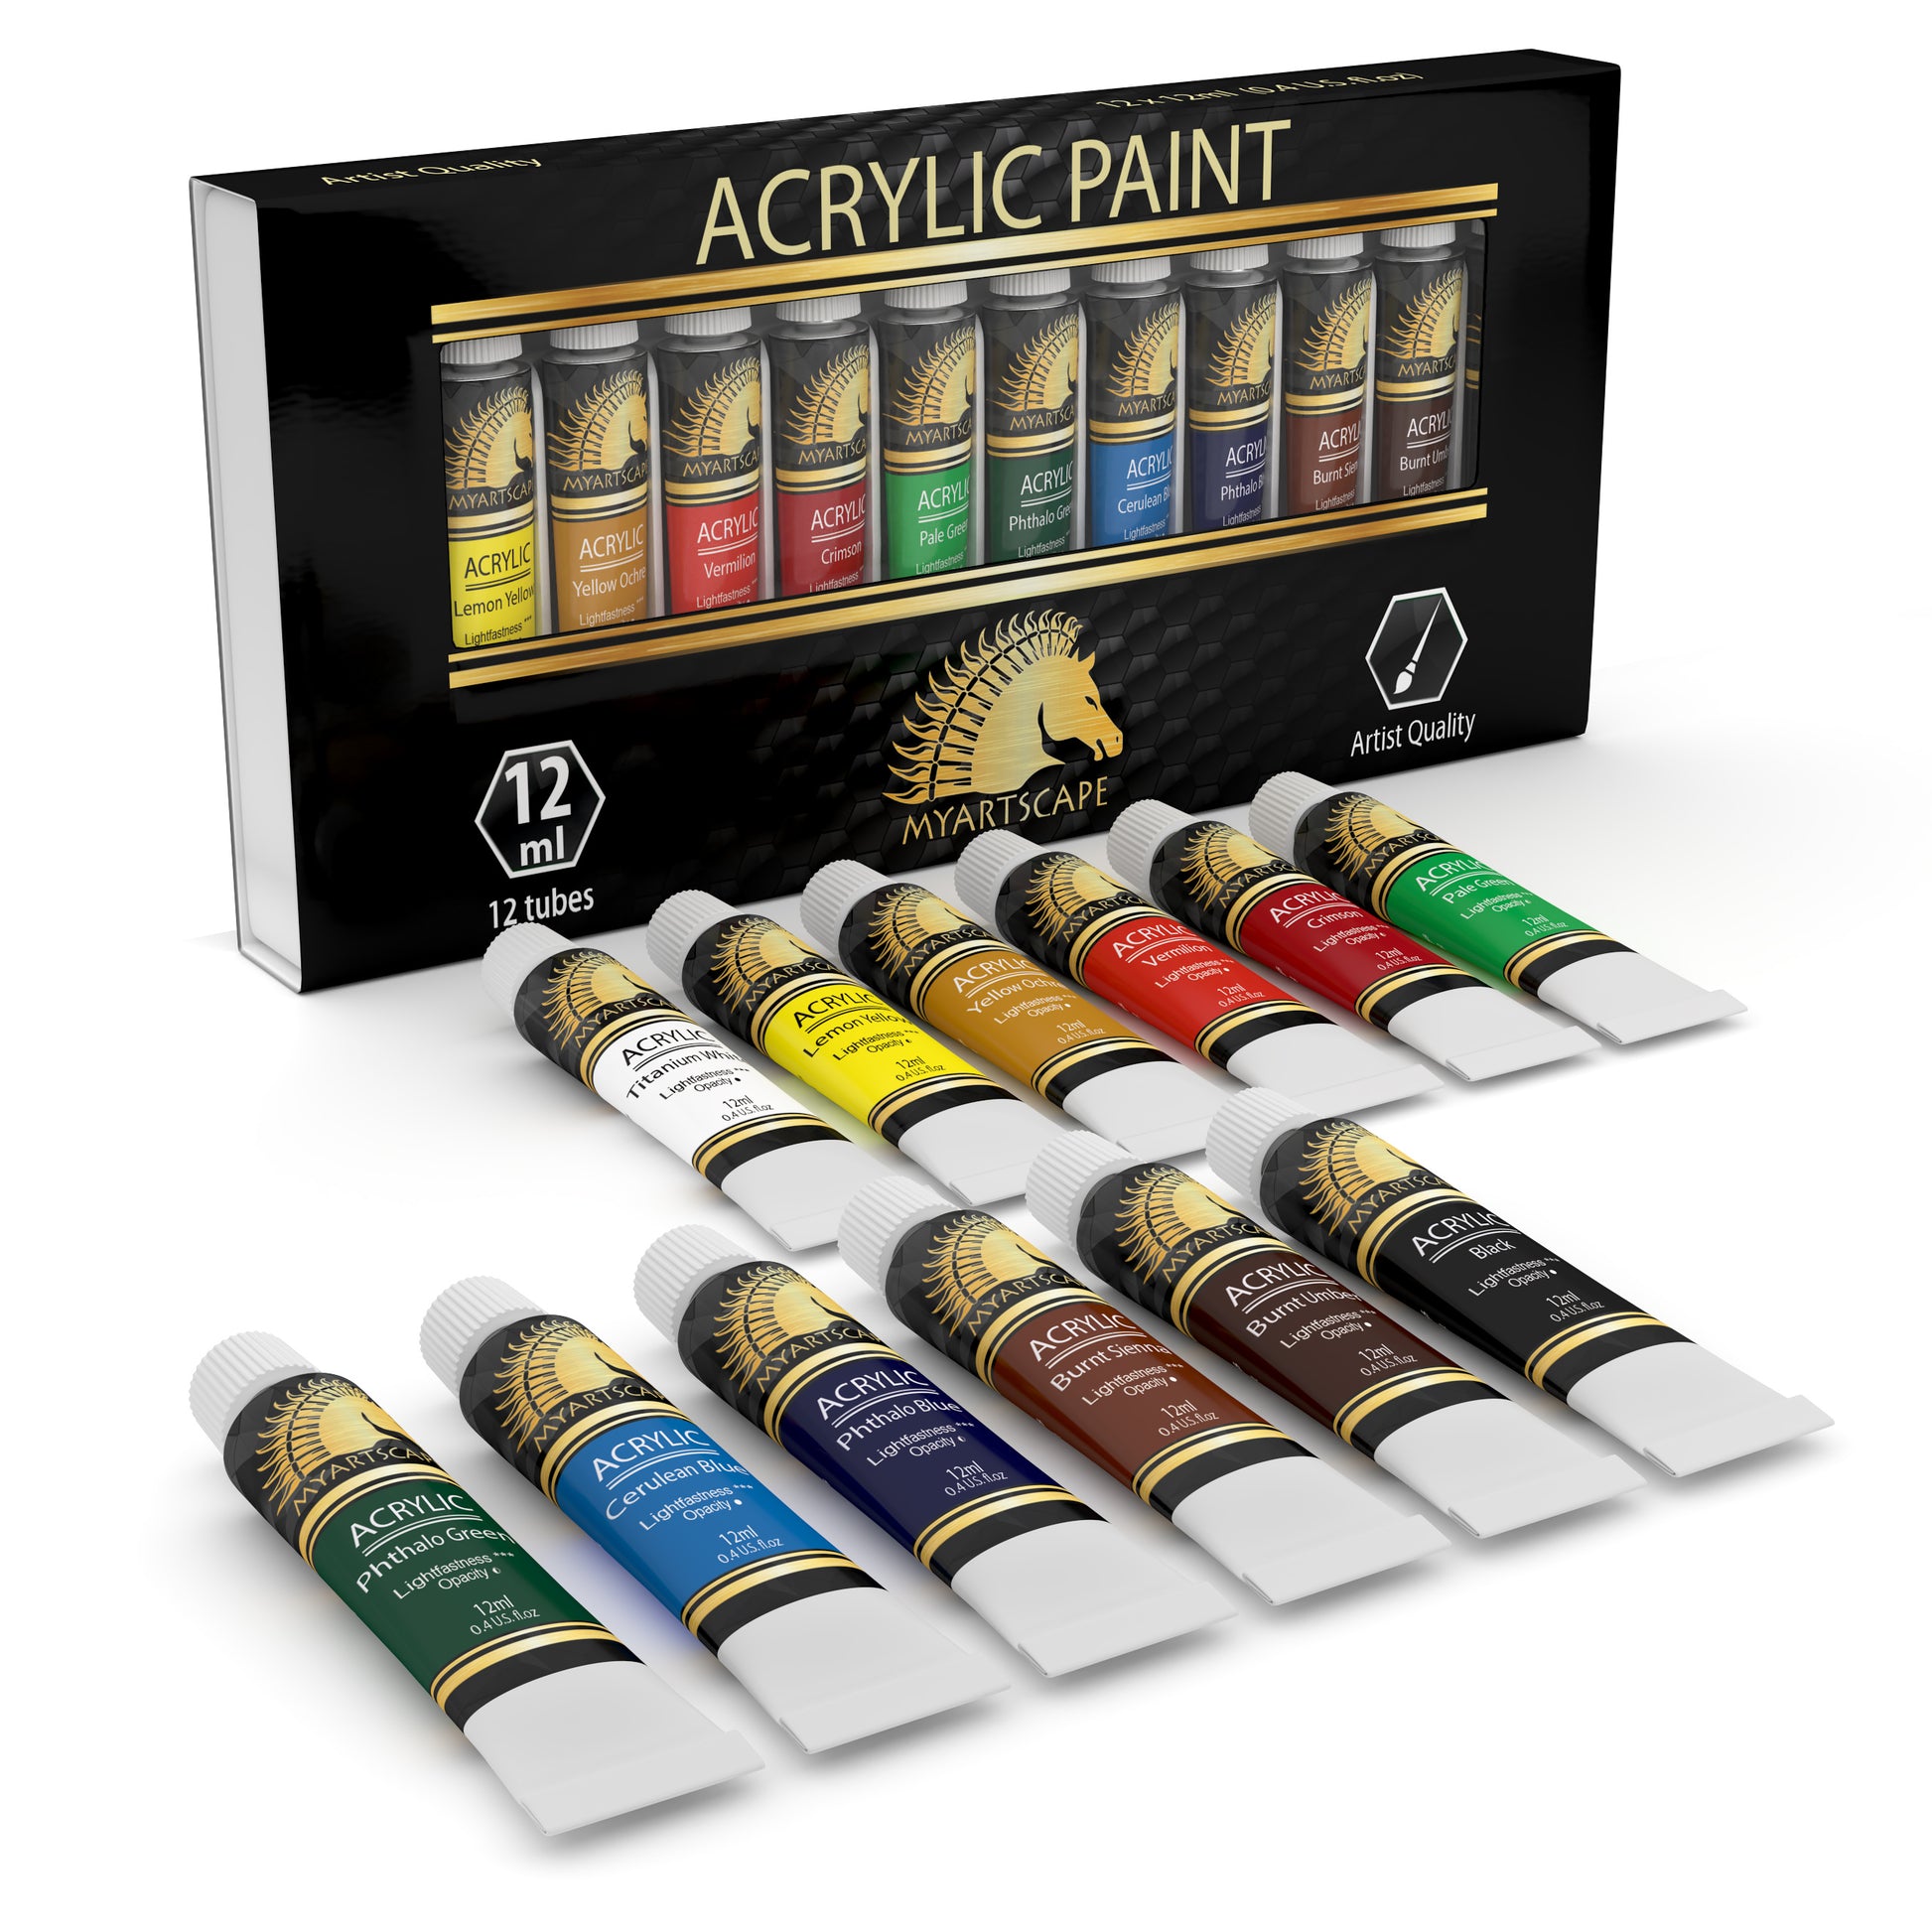 Acrylic Paint, 12ml Tubes - Set of 12 – MyArtscape